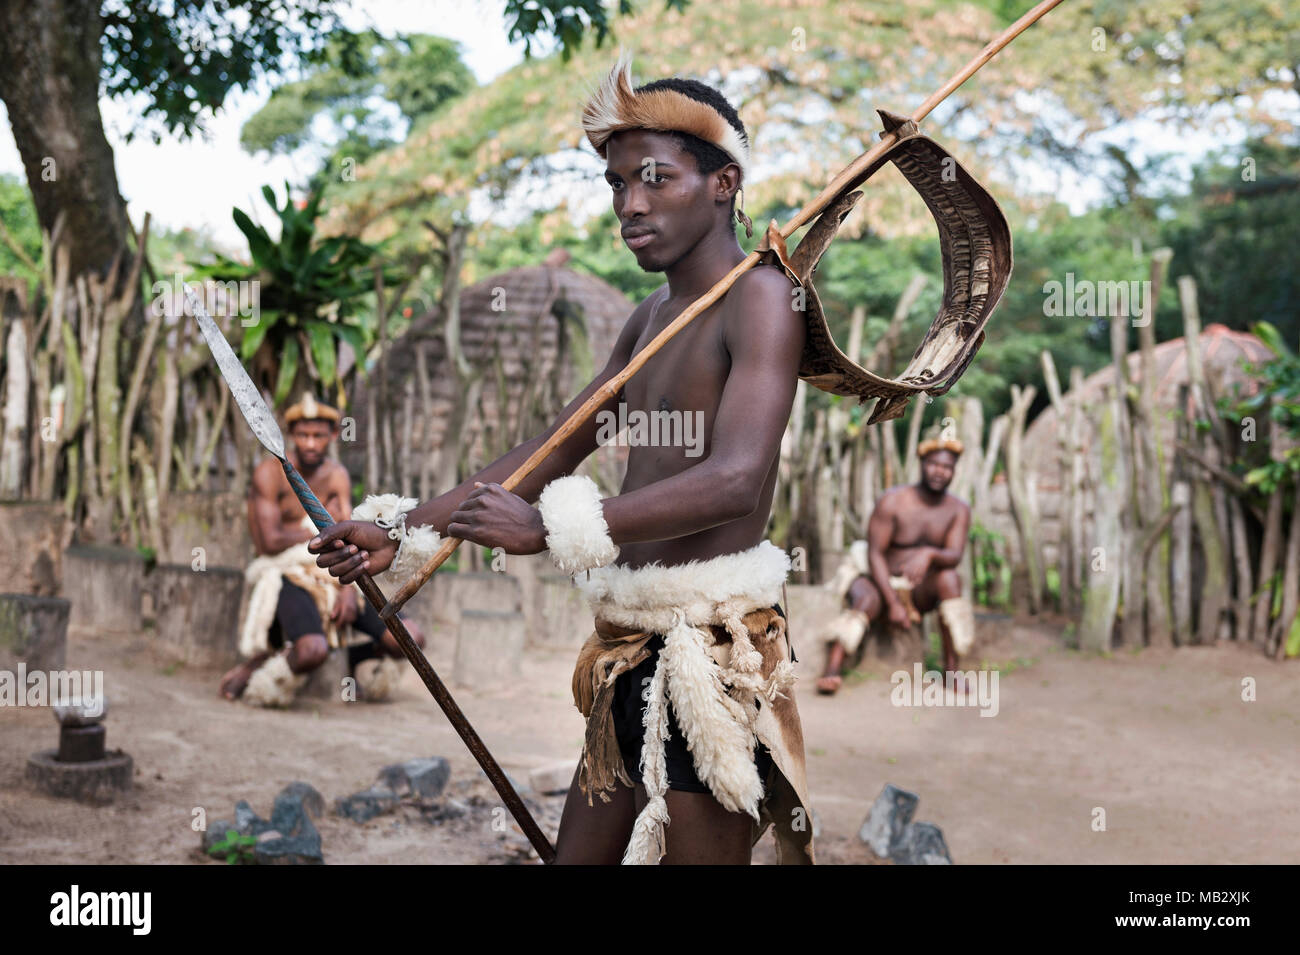 Sainte-lucie- Afrique du Sud - 25 juin 2017 : Zulu warrior en costume traditionnel dans le village de zoulou Khula près de Santa Lucia en Afrique du Sud Banque D'Images